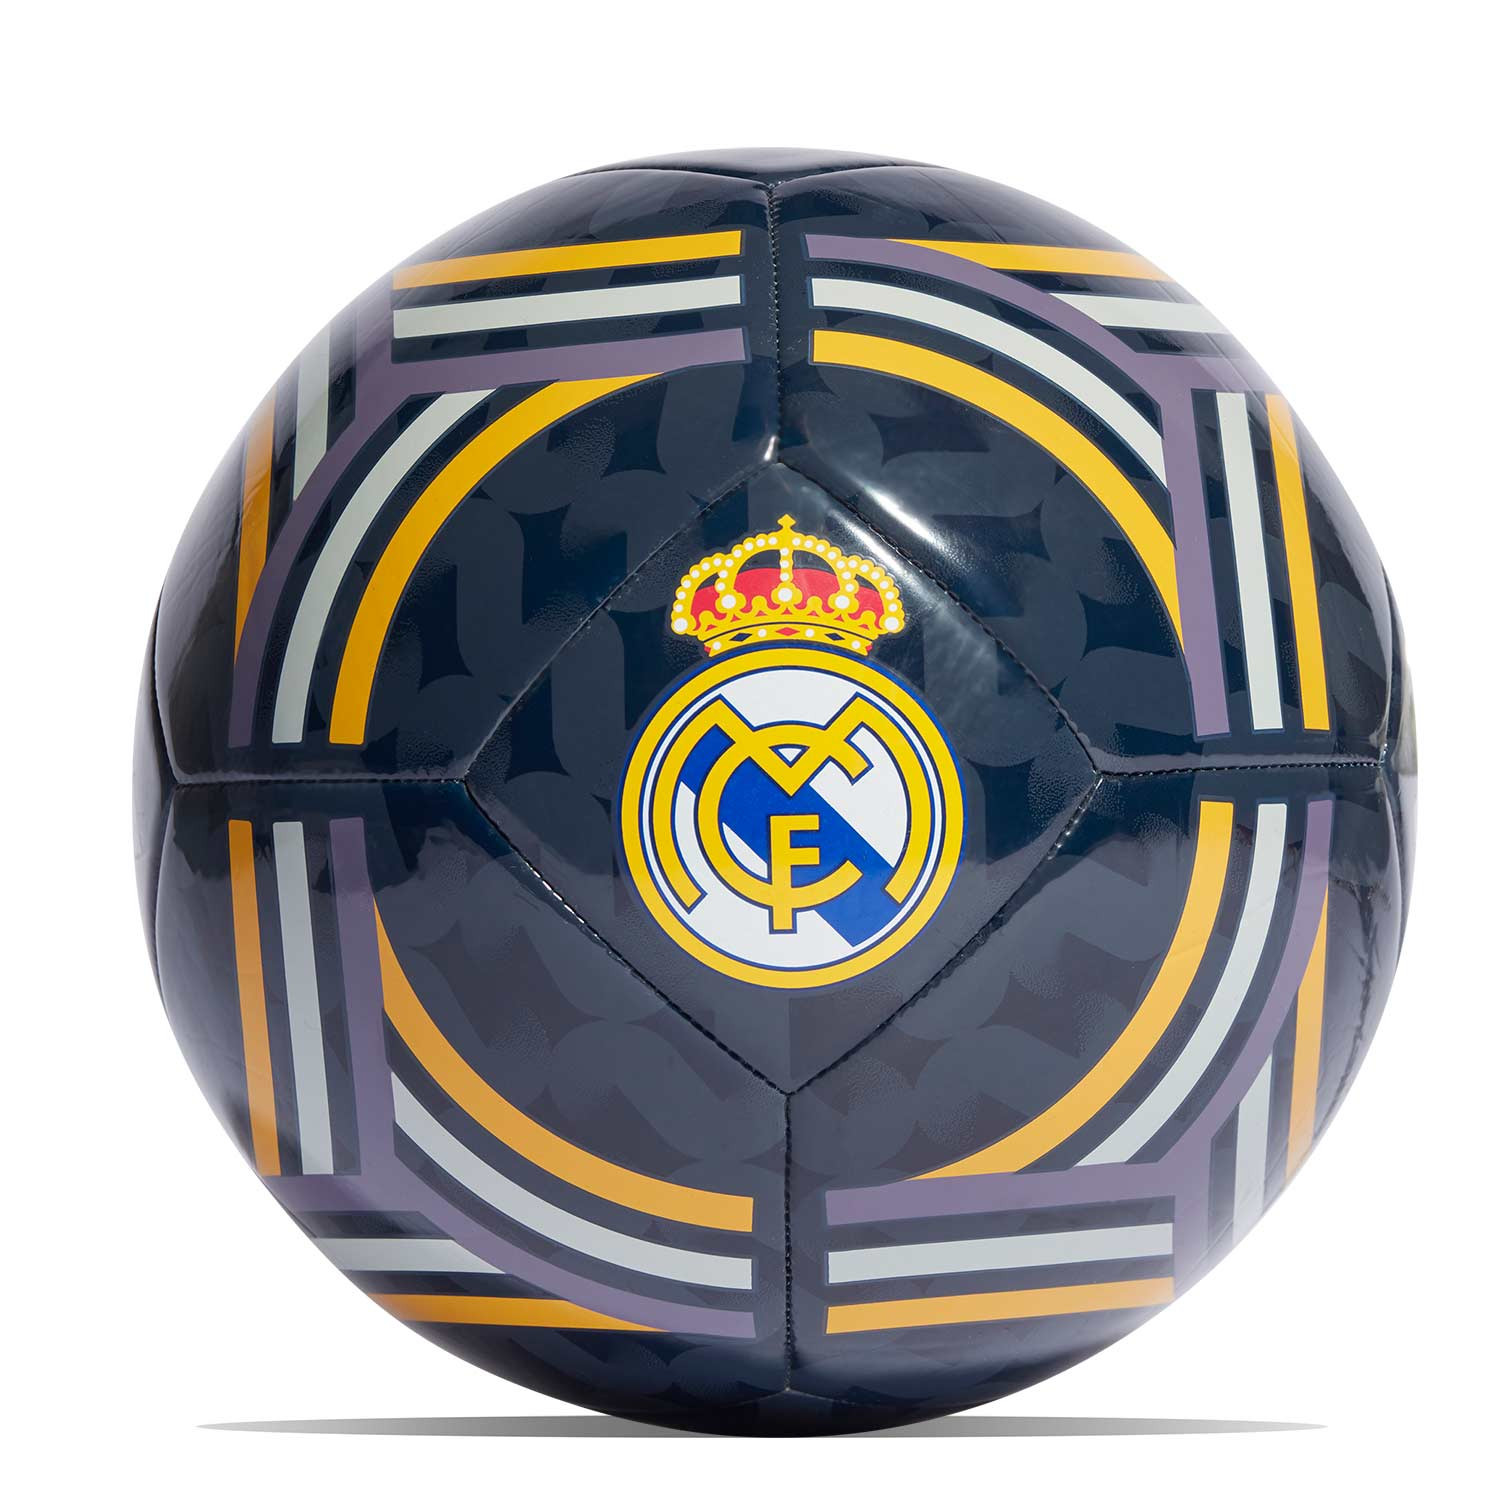 compra balon futbol de Real Madrid talla 5, en nuestra web